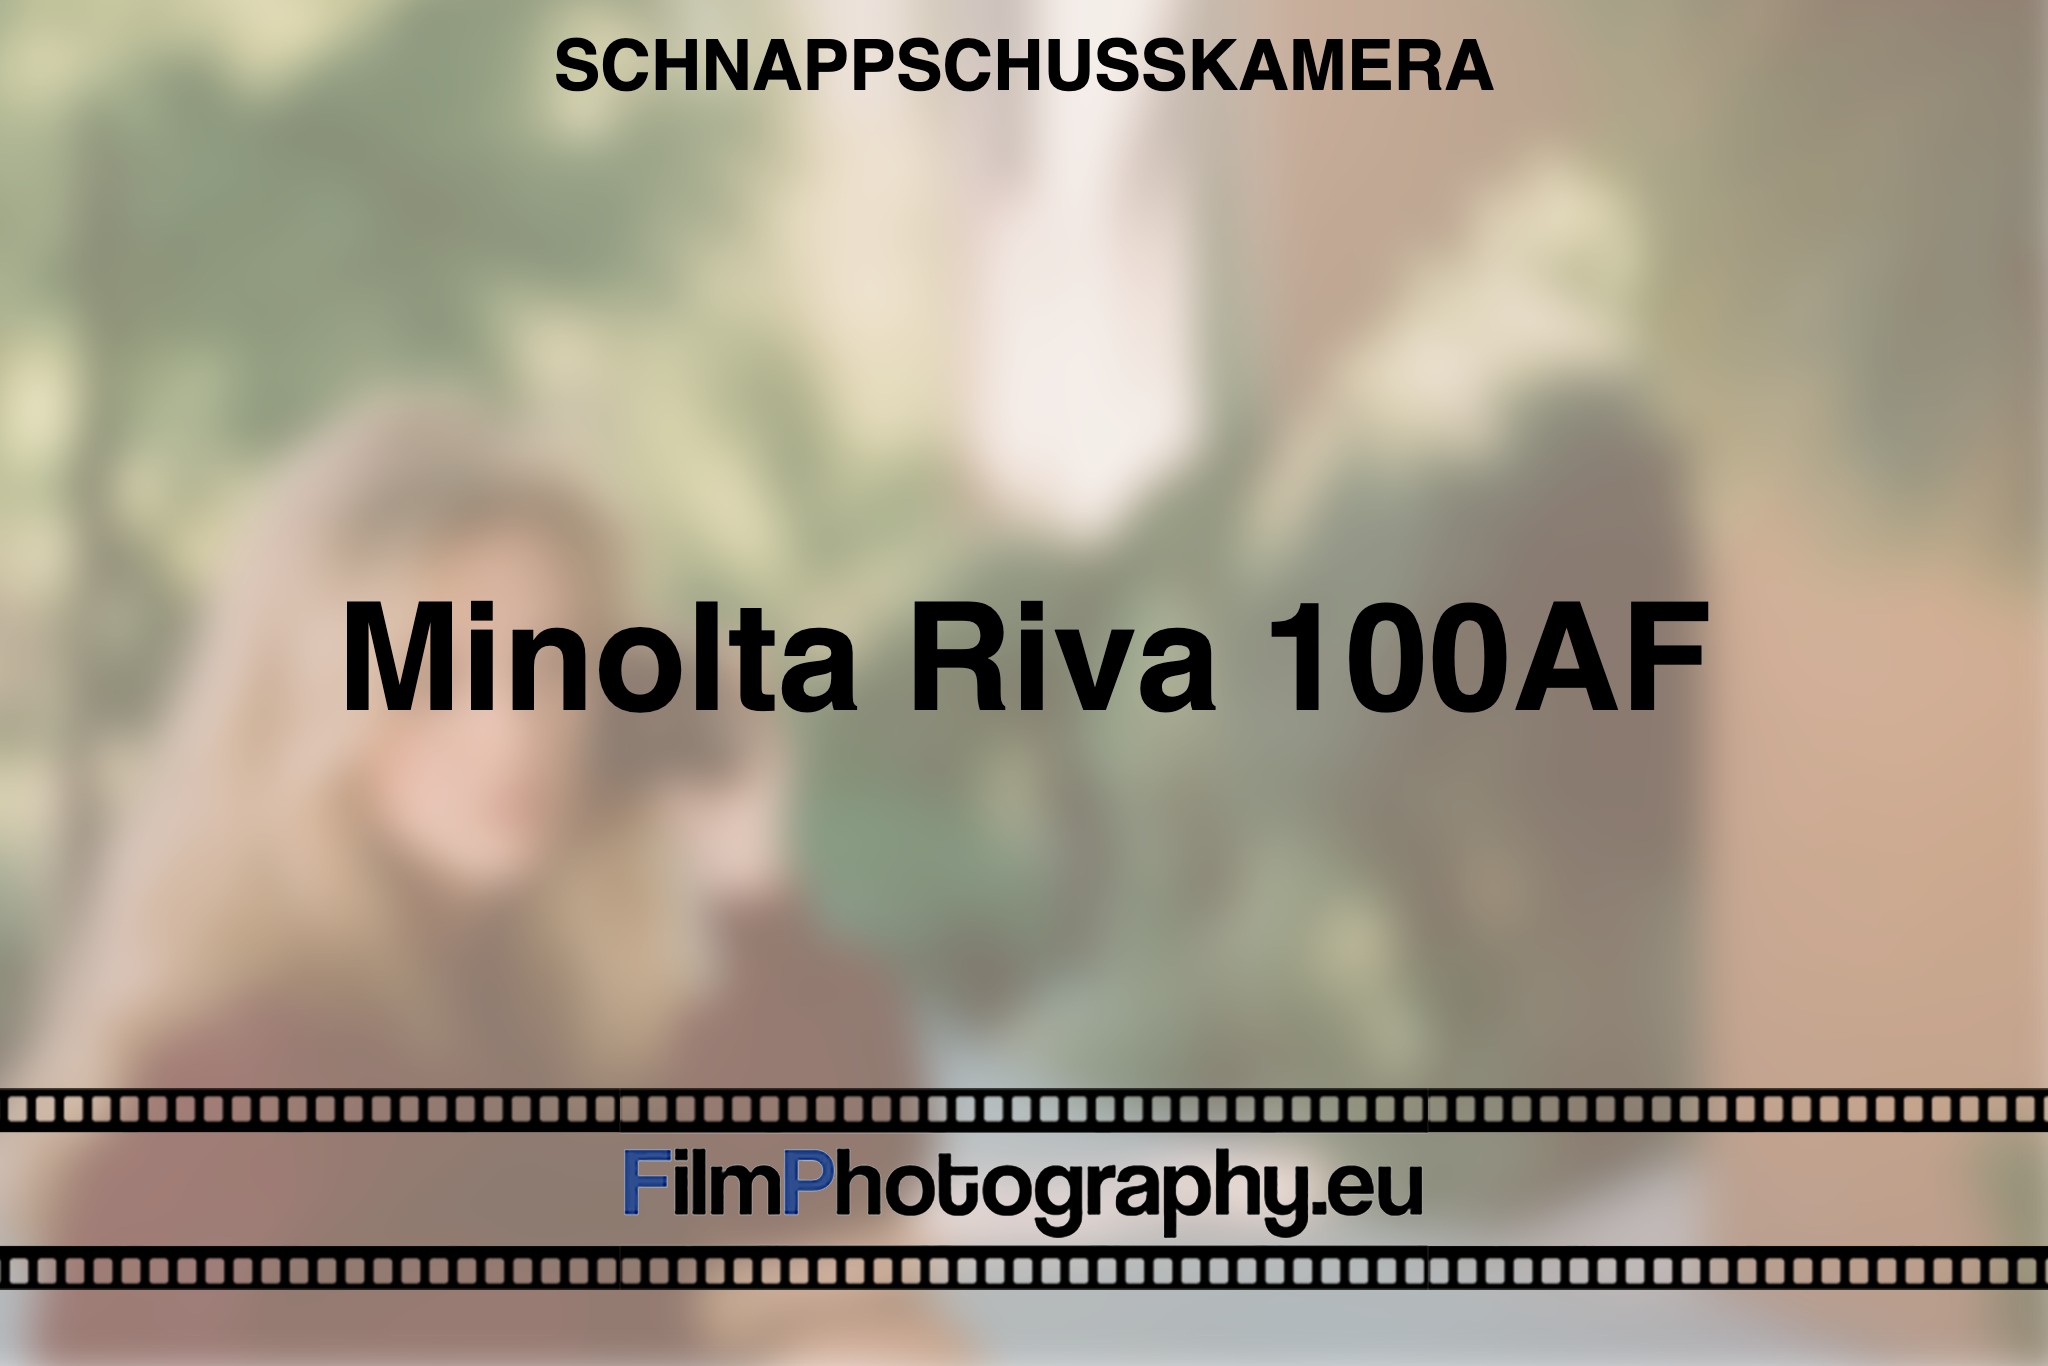 minolta-riva-100af-schnappschusskamera-bnv